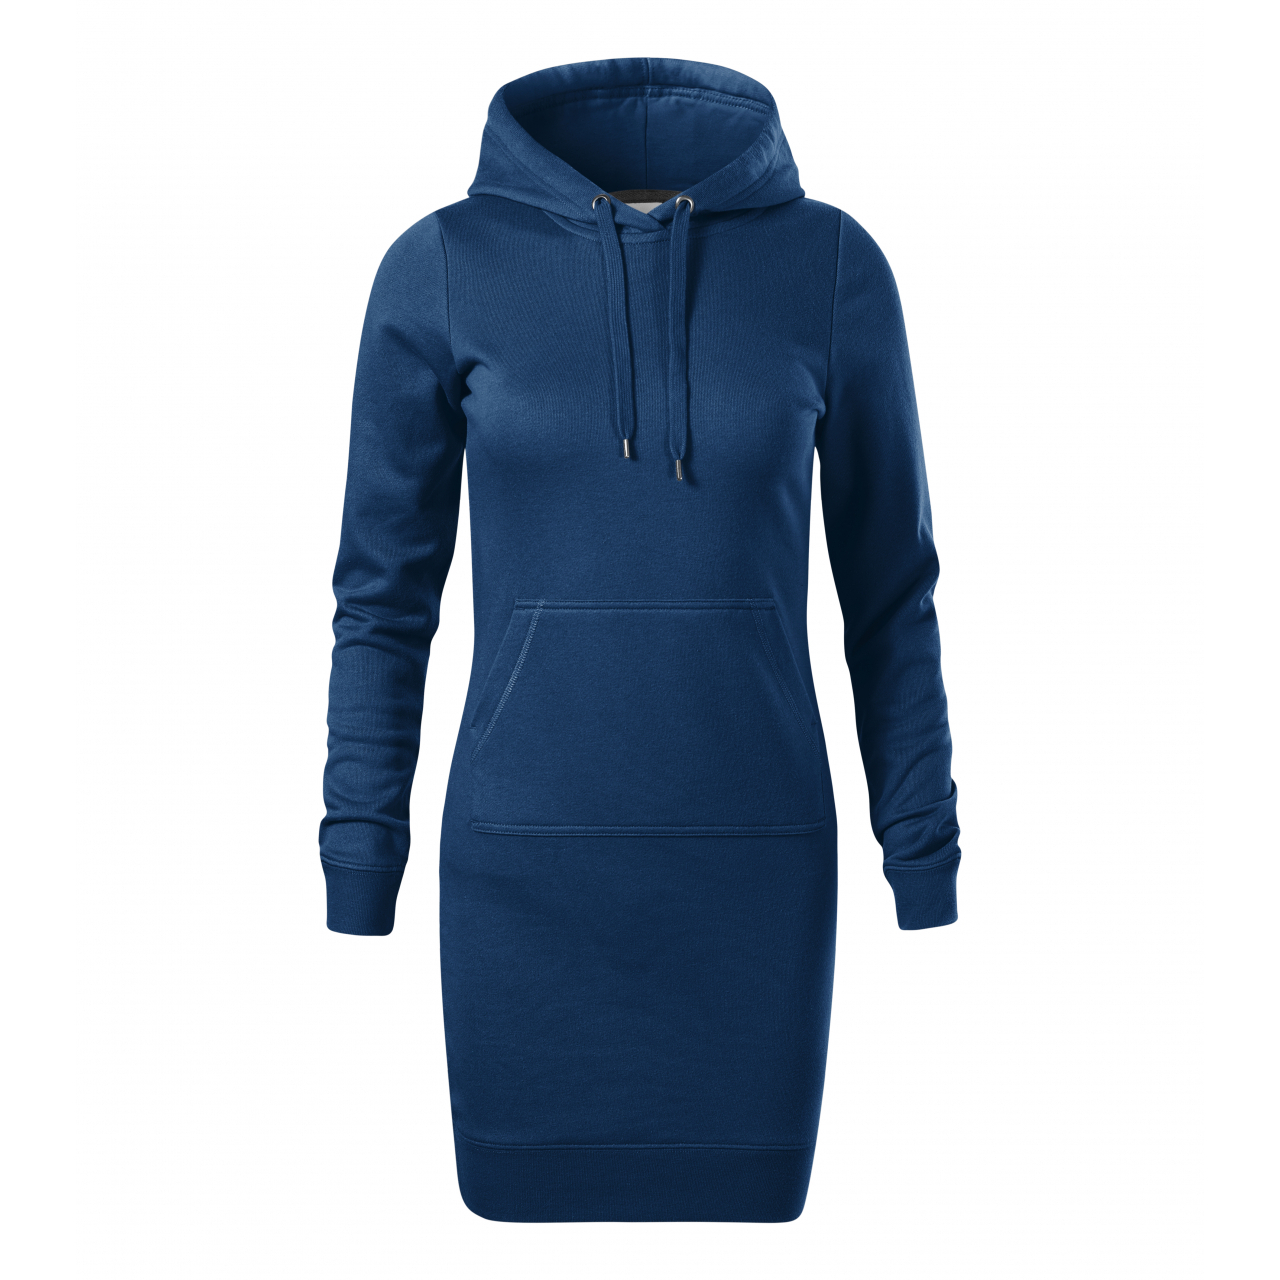 Šaty dámské Malfini Snap - tmavě modré, XL